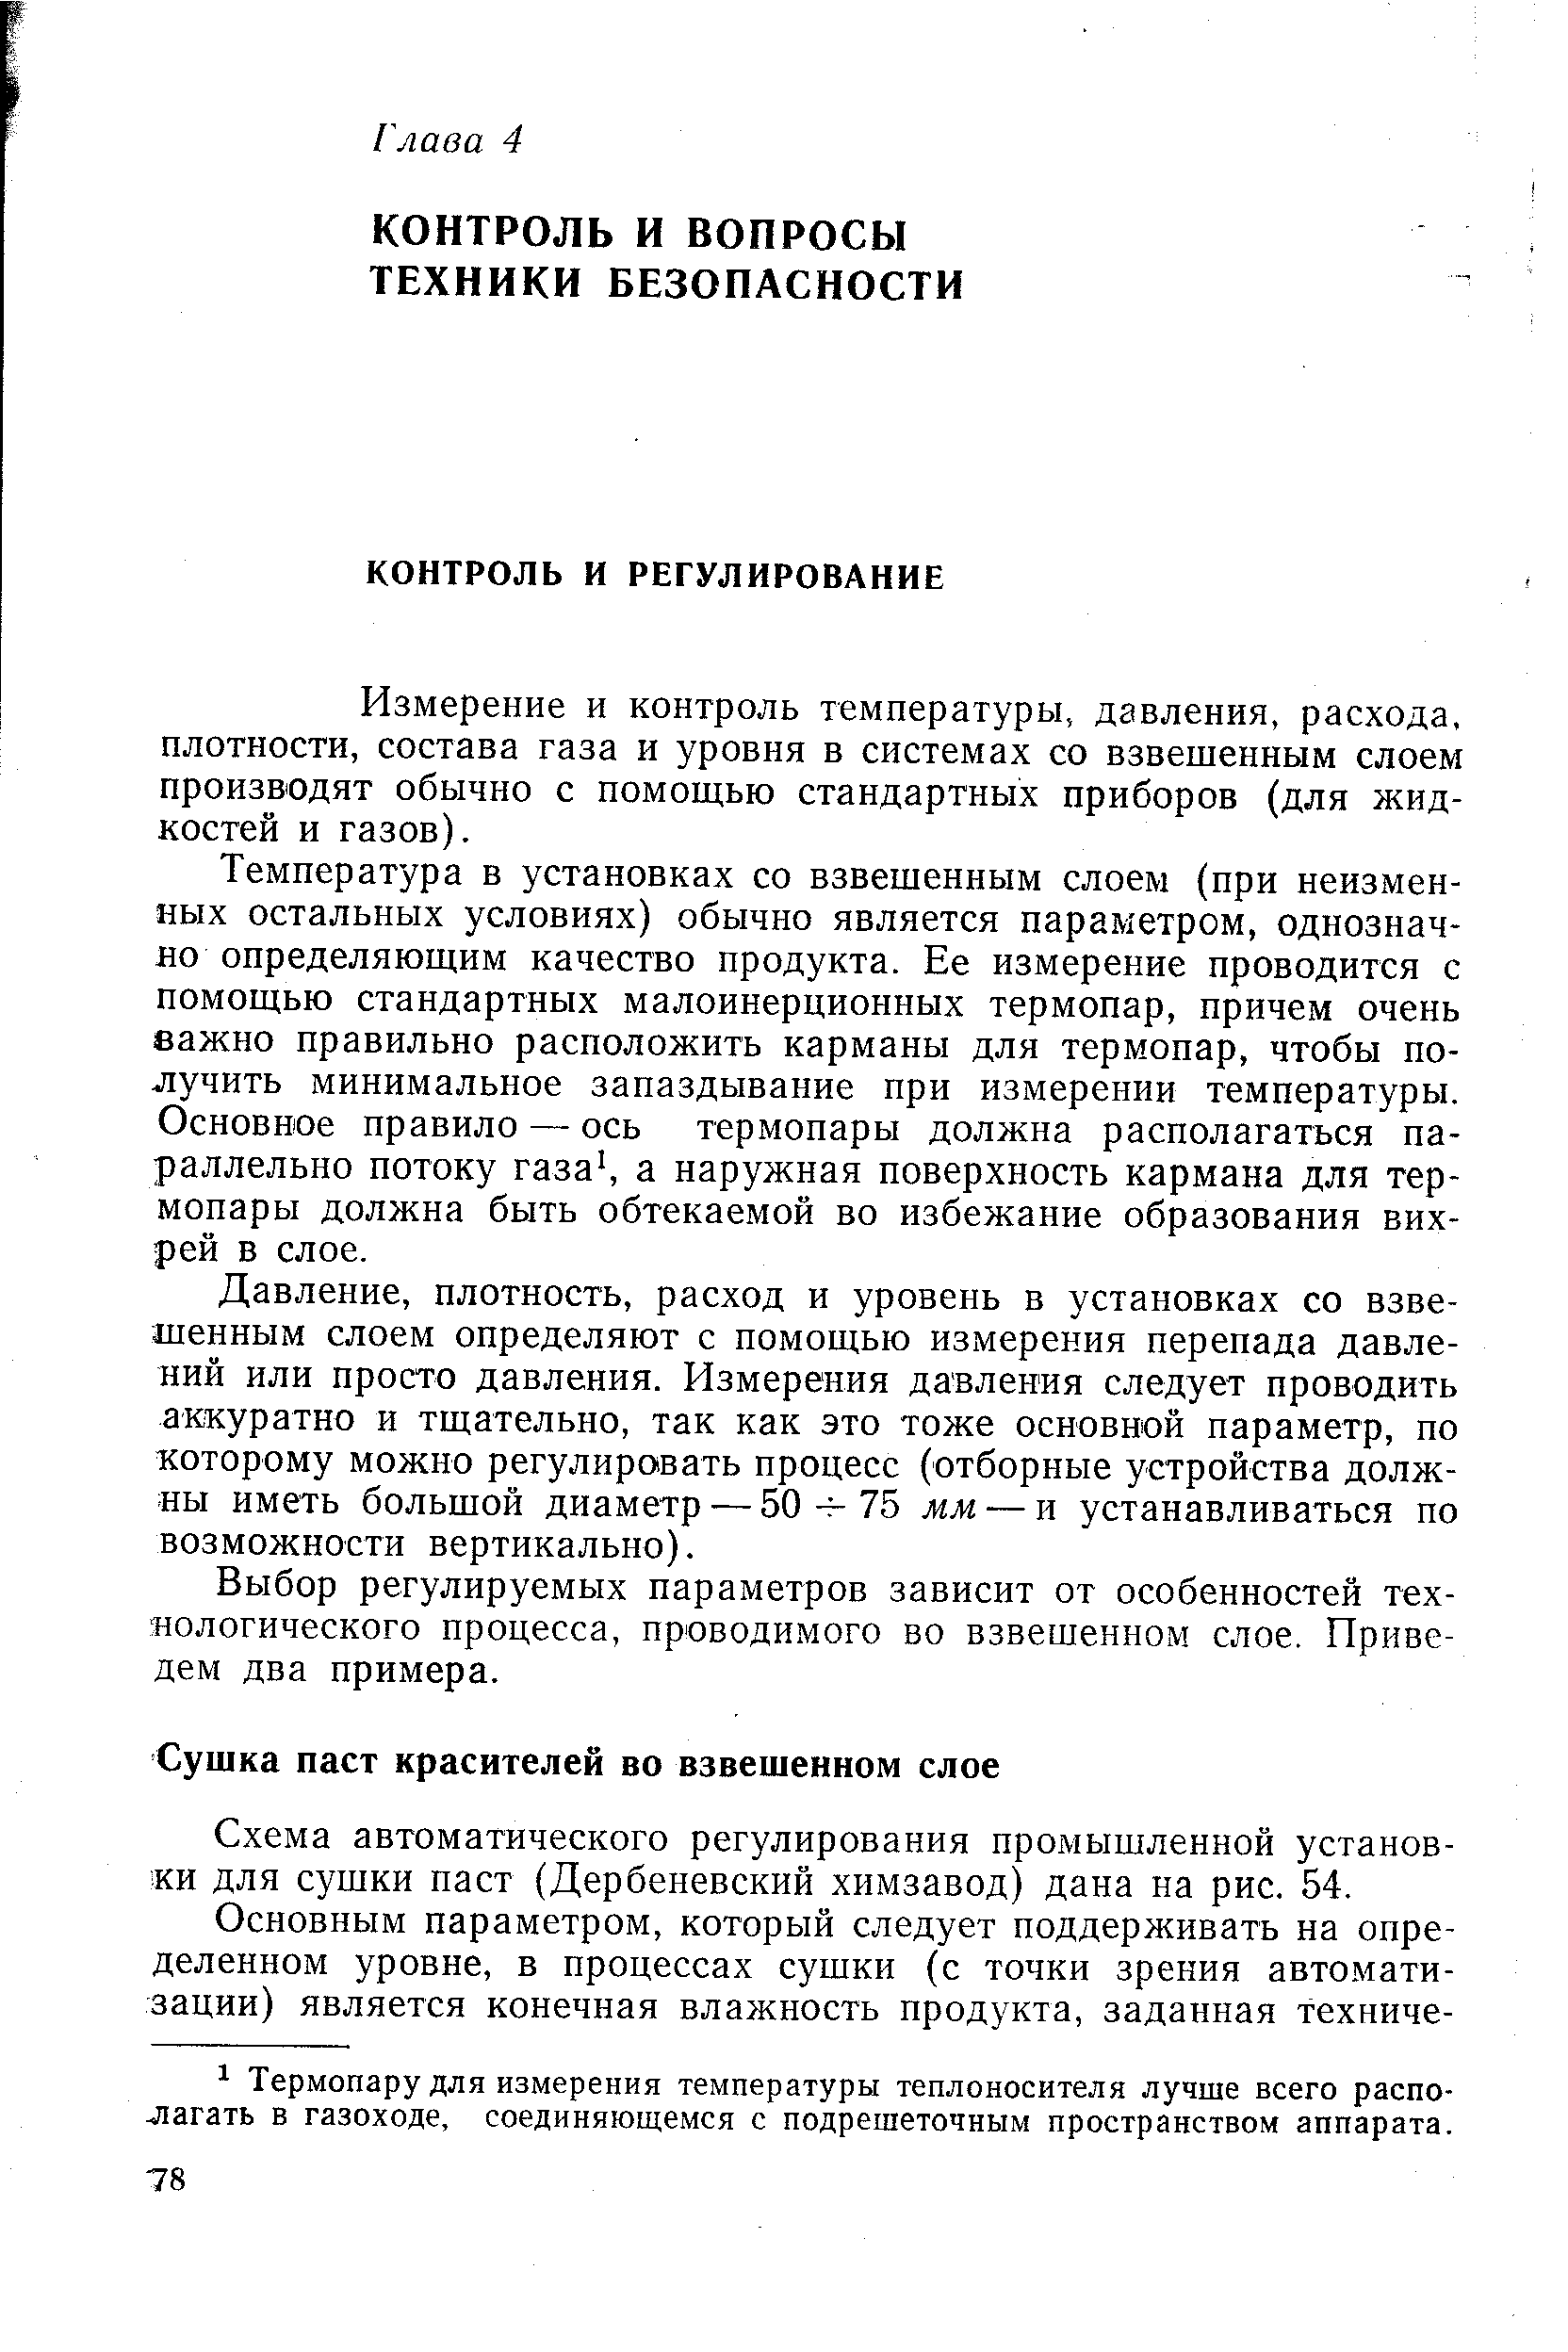 Схема автоматического регулирования промышленной установки для сушки паст (Дербеневский химзавод) дана на рис. 54.